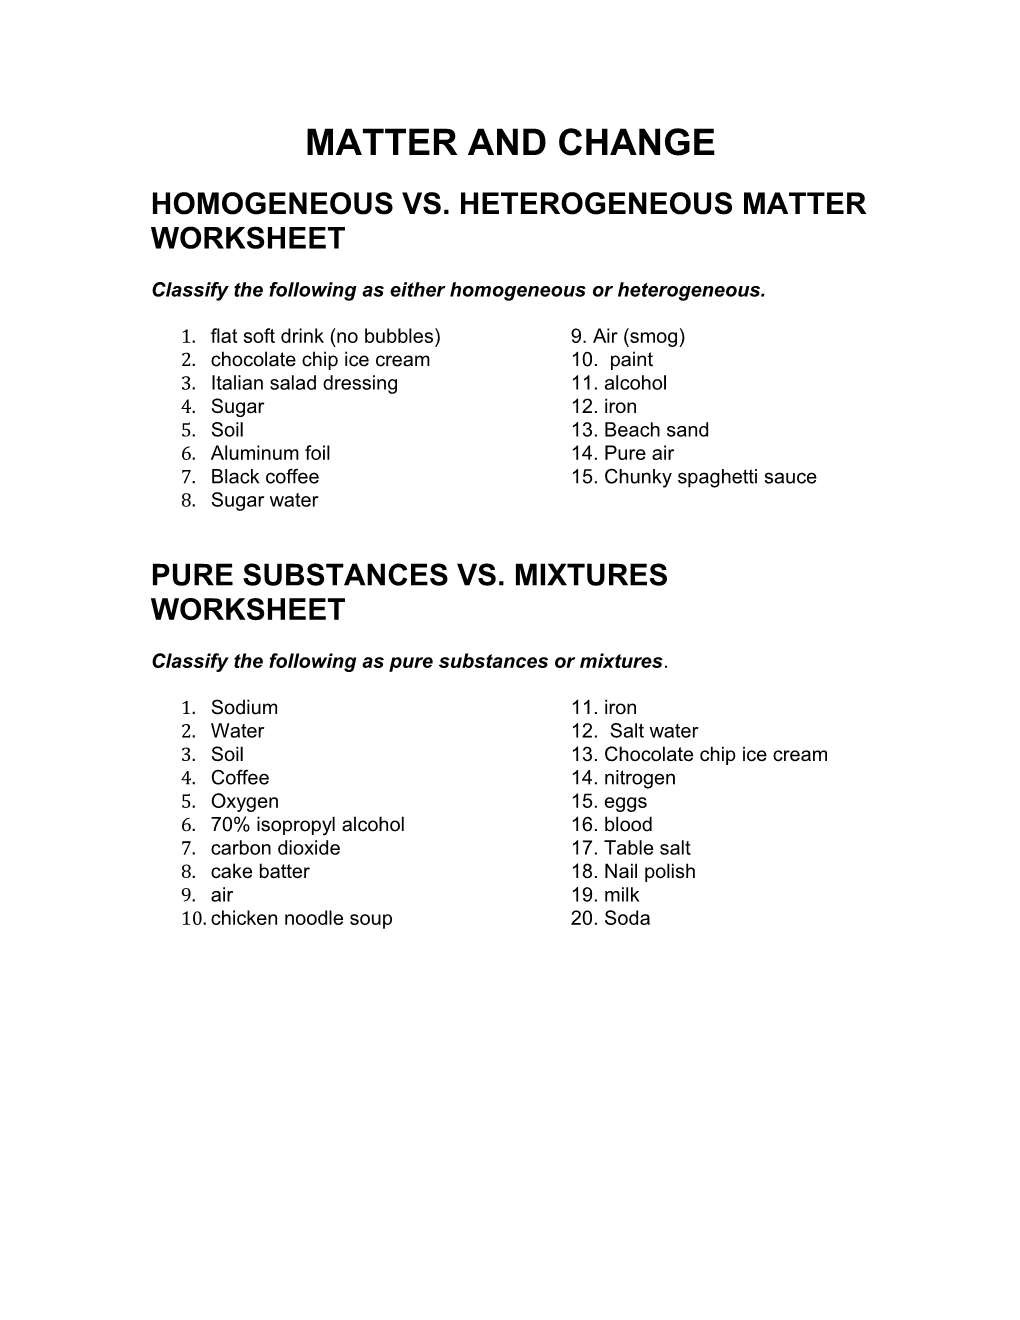 Homogeneous Vs. Heterogeneous Matter Worksheet